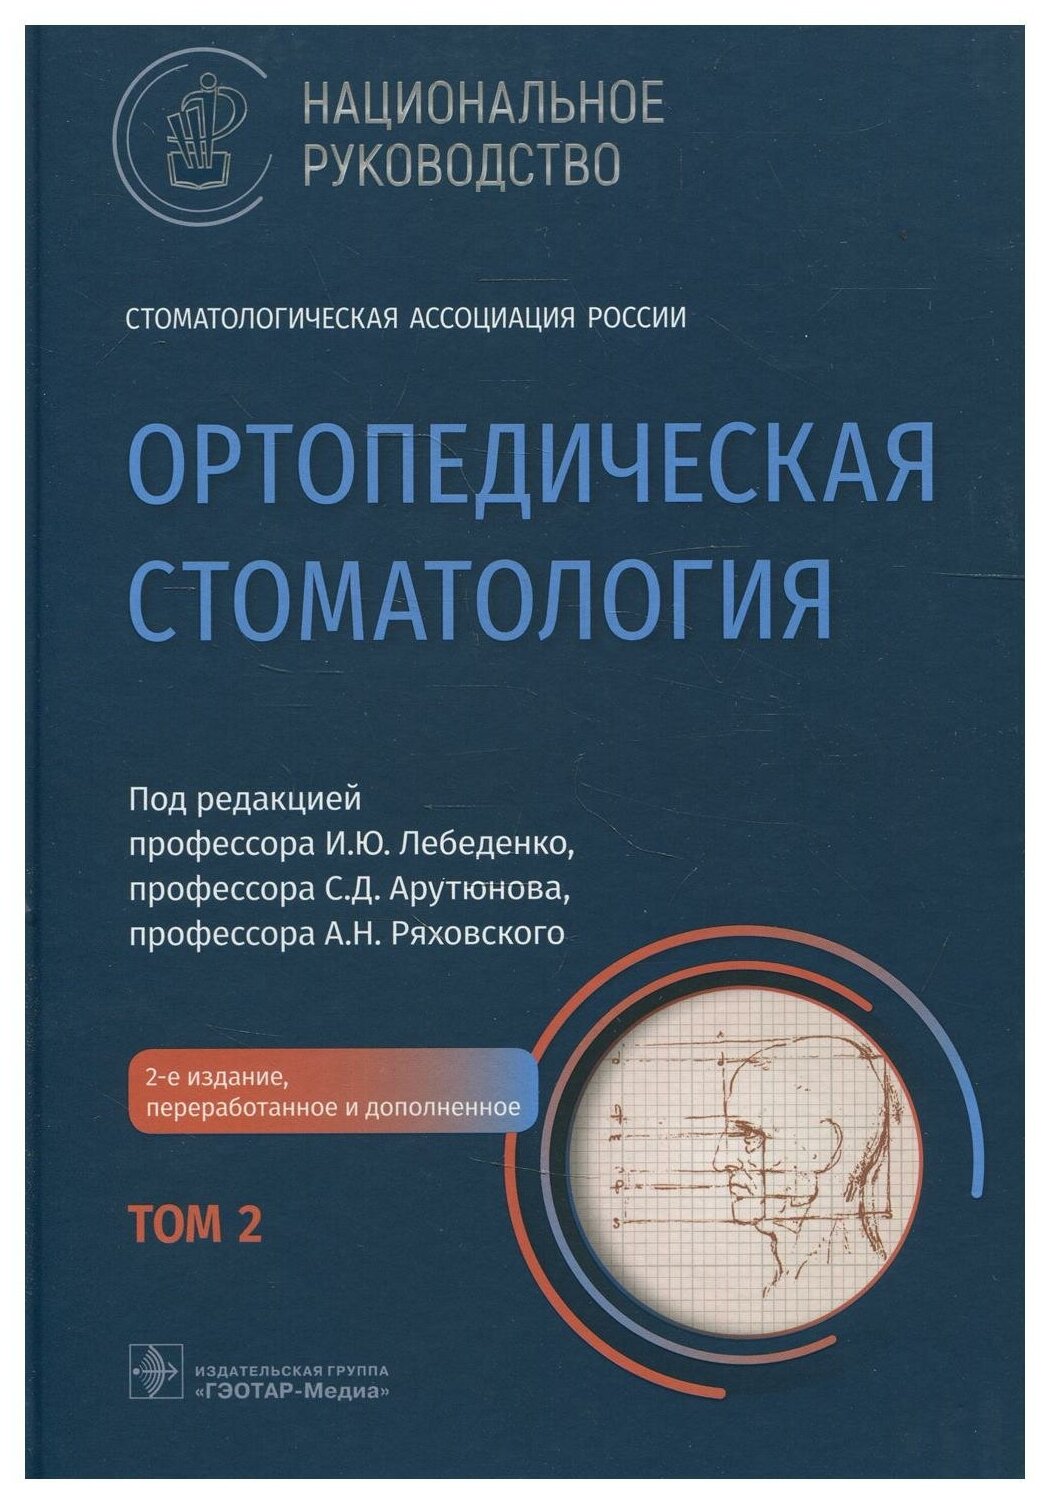 Ортопедическая стоматология: национальное руководство. В 2 т. Т. 2. 2-е изд, пернраб. и доп